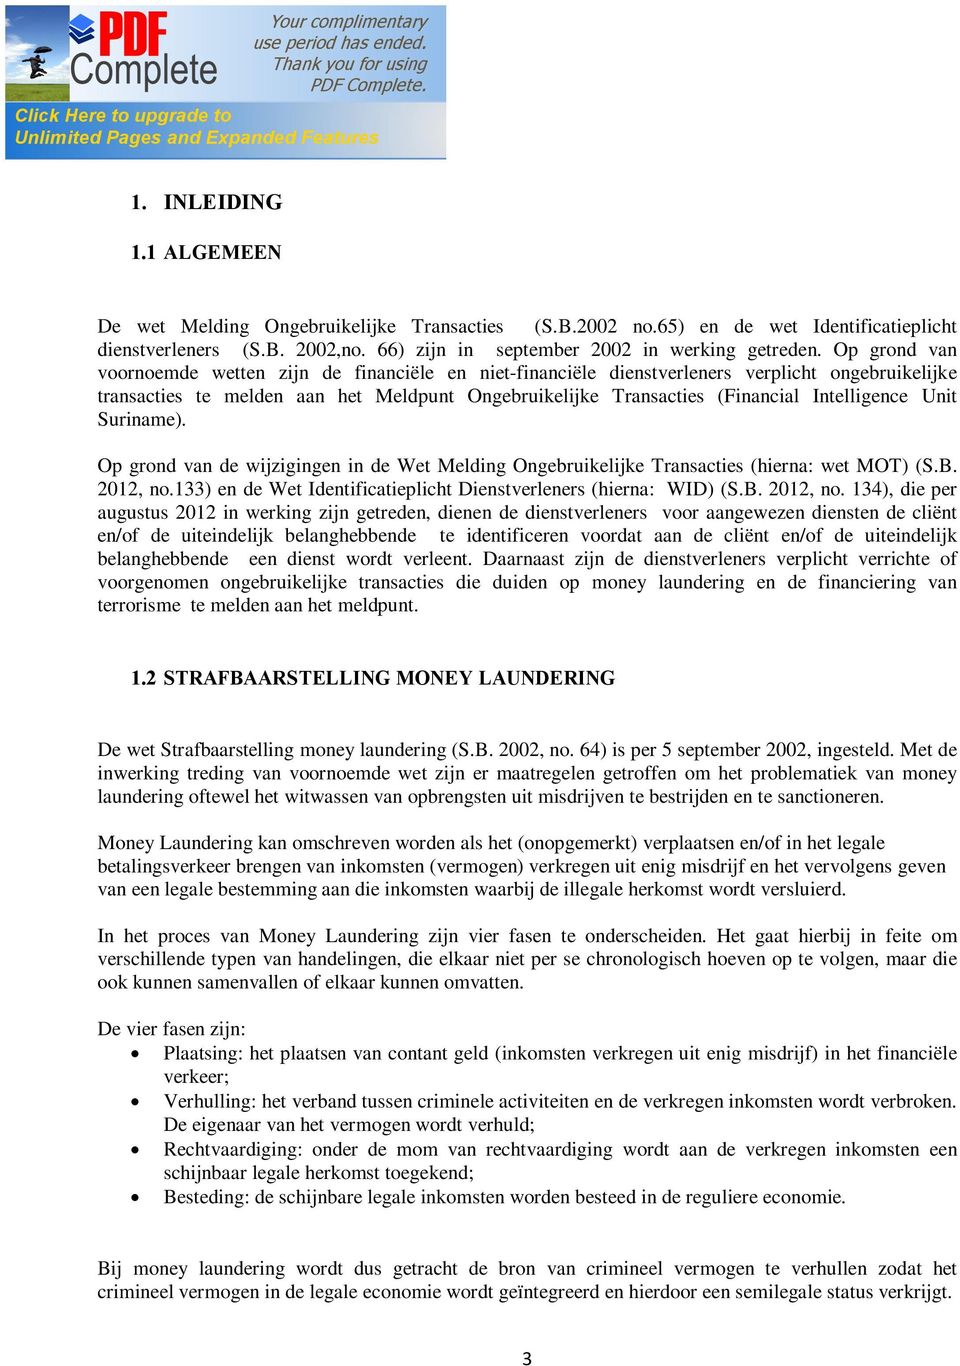 Intelligence Unit Suriname). Op grond van de wijzigingen in de Wet Melding Ongebruikelijke Transacties (hierna: wet MOT) (S.B. 2012, no.